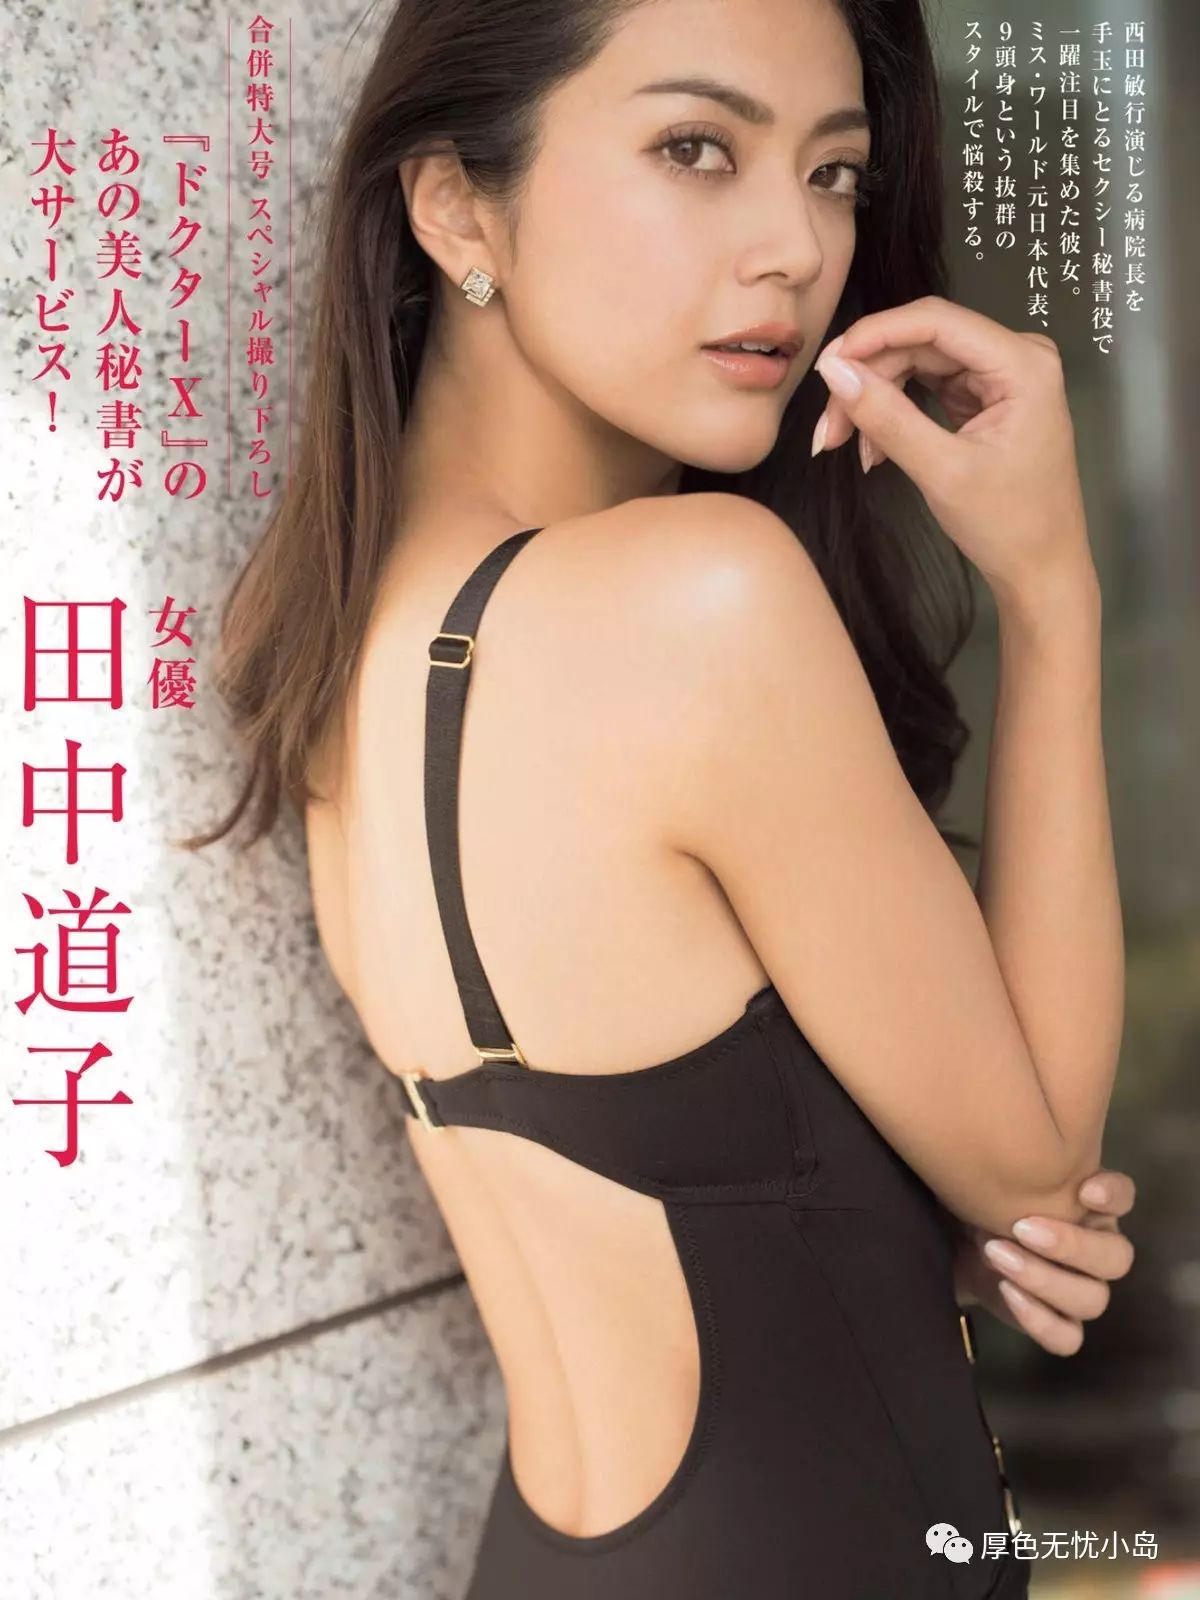 田中道子 代表日本角逐世界小姐的九头身美魔女 厚色小岛 微信公众号文章